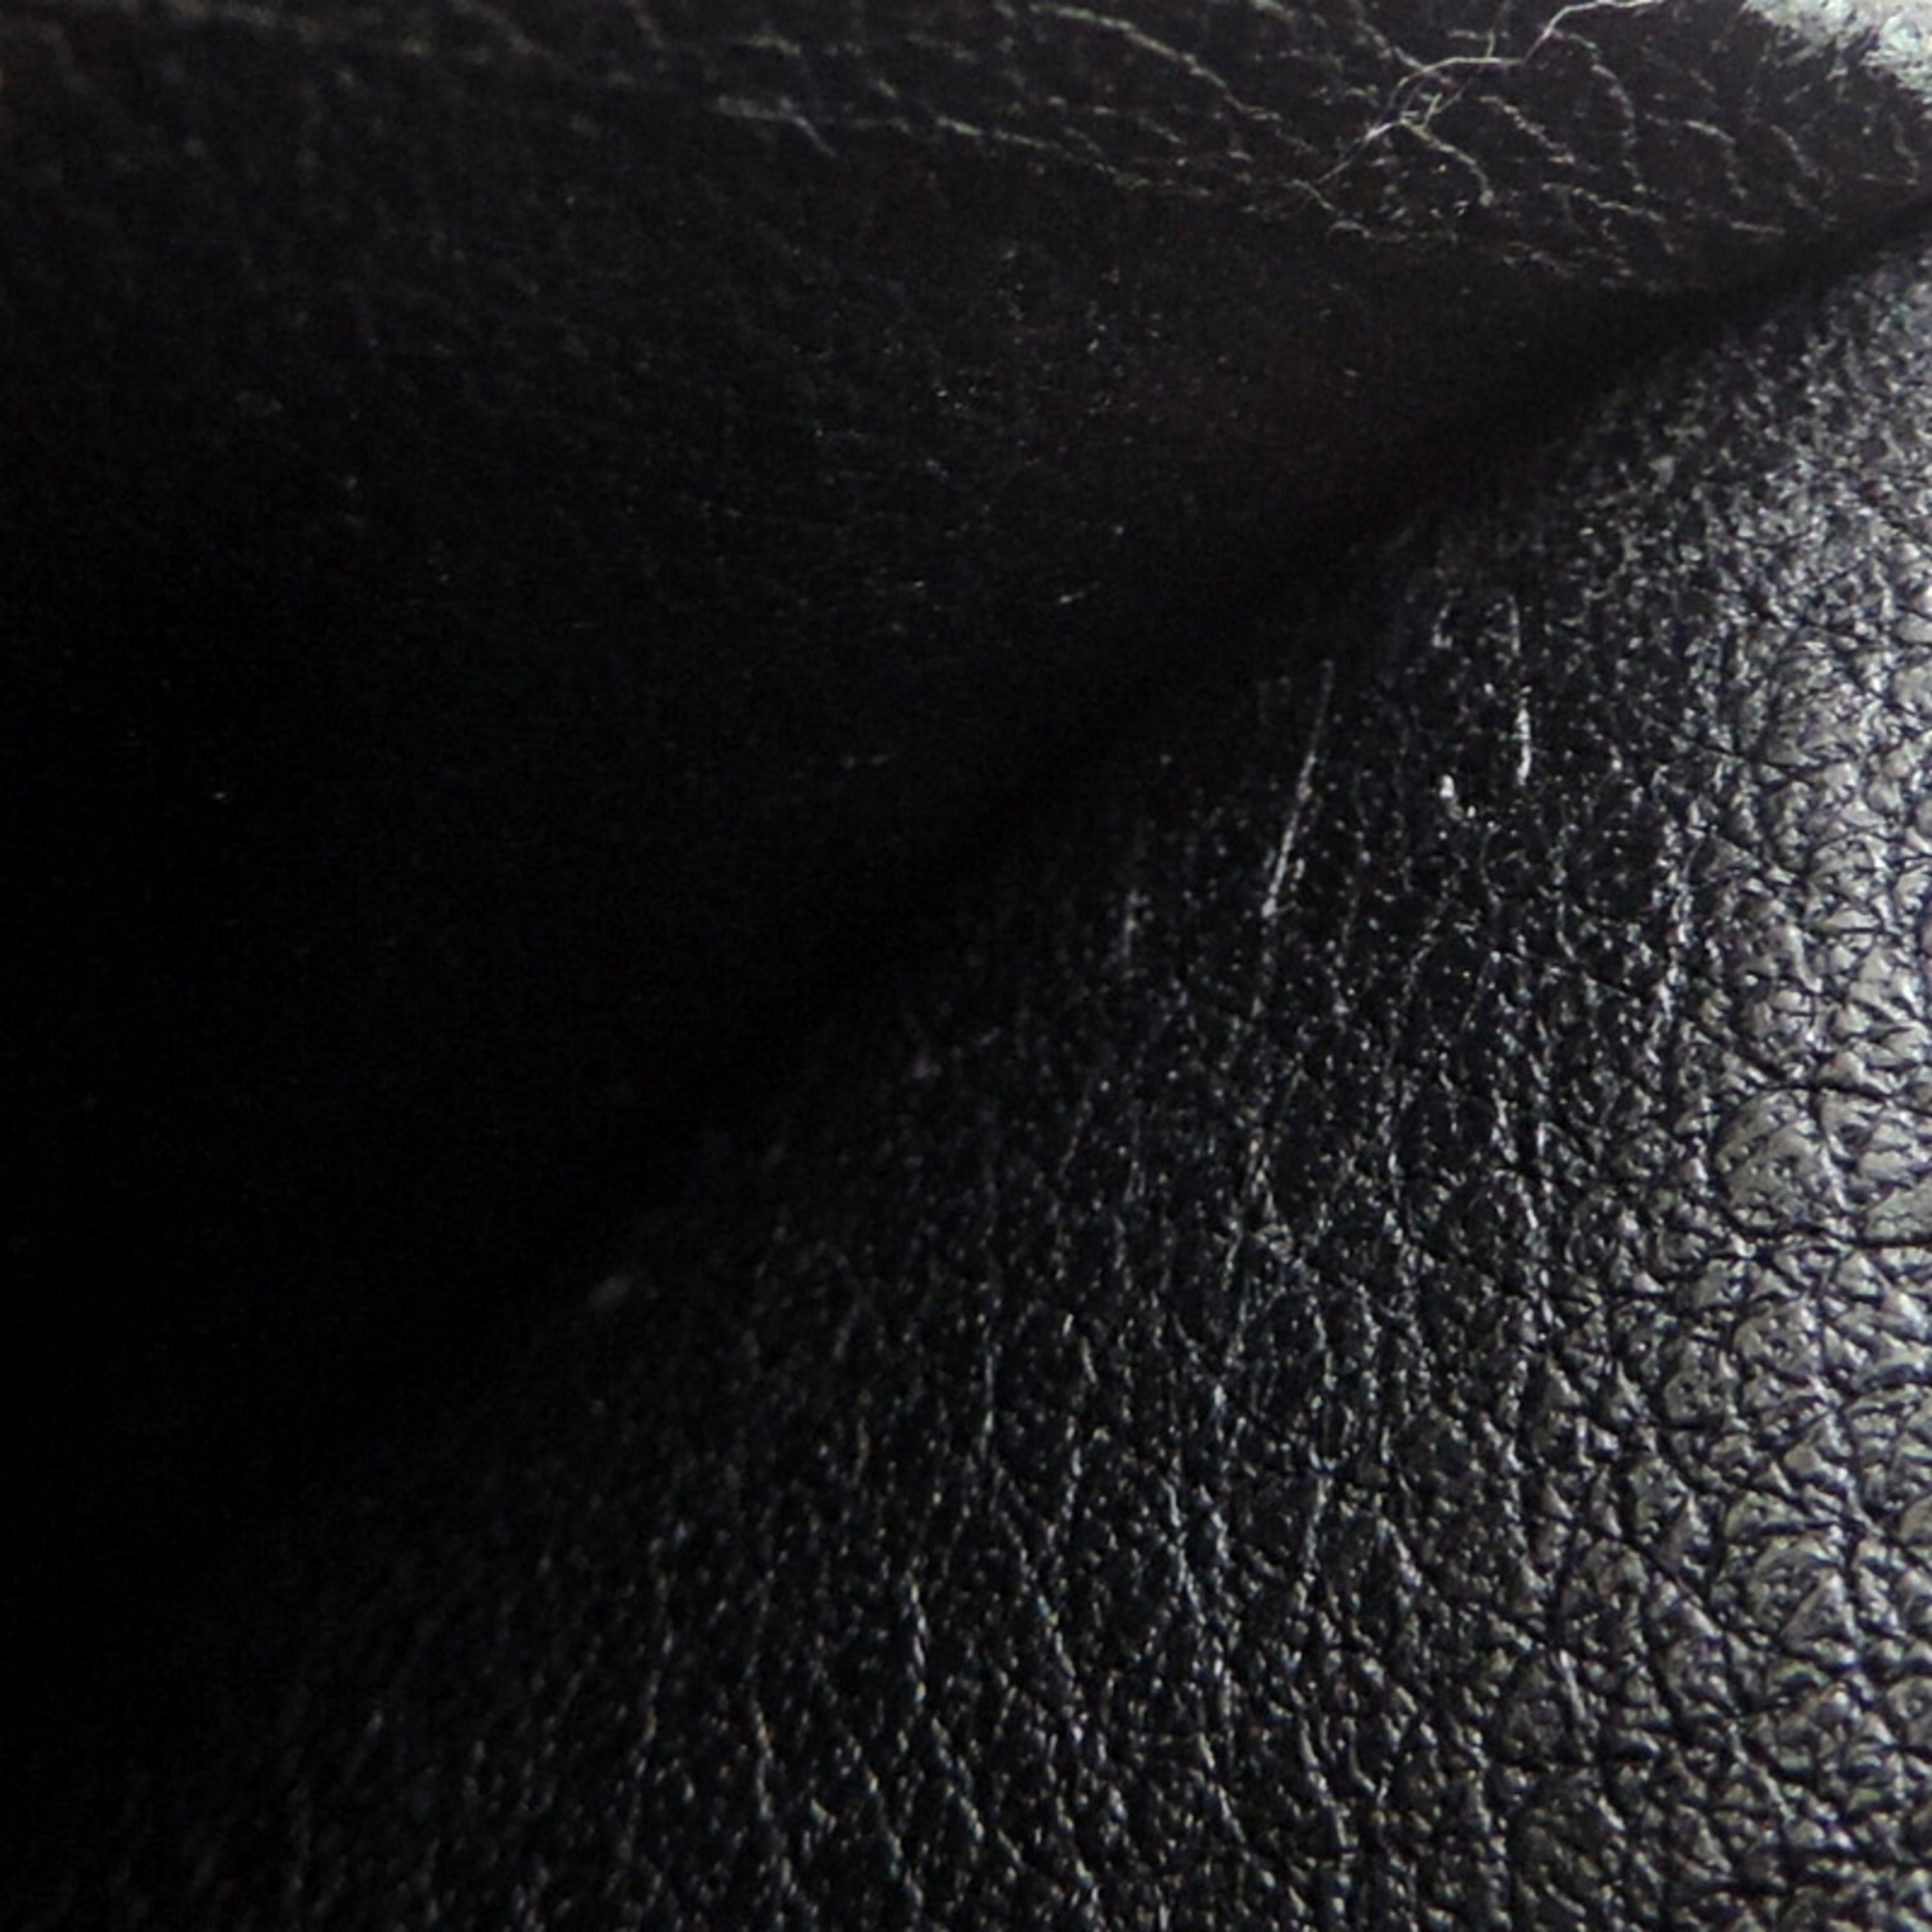 Louis Vuitton Portefeuille Brazza Men's Long Wallet M58192 Taurillon Noir (Black)